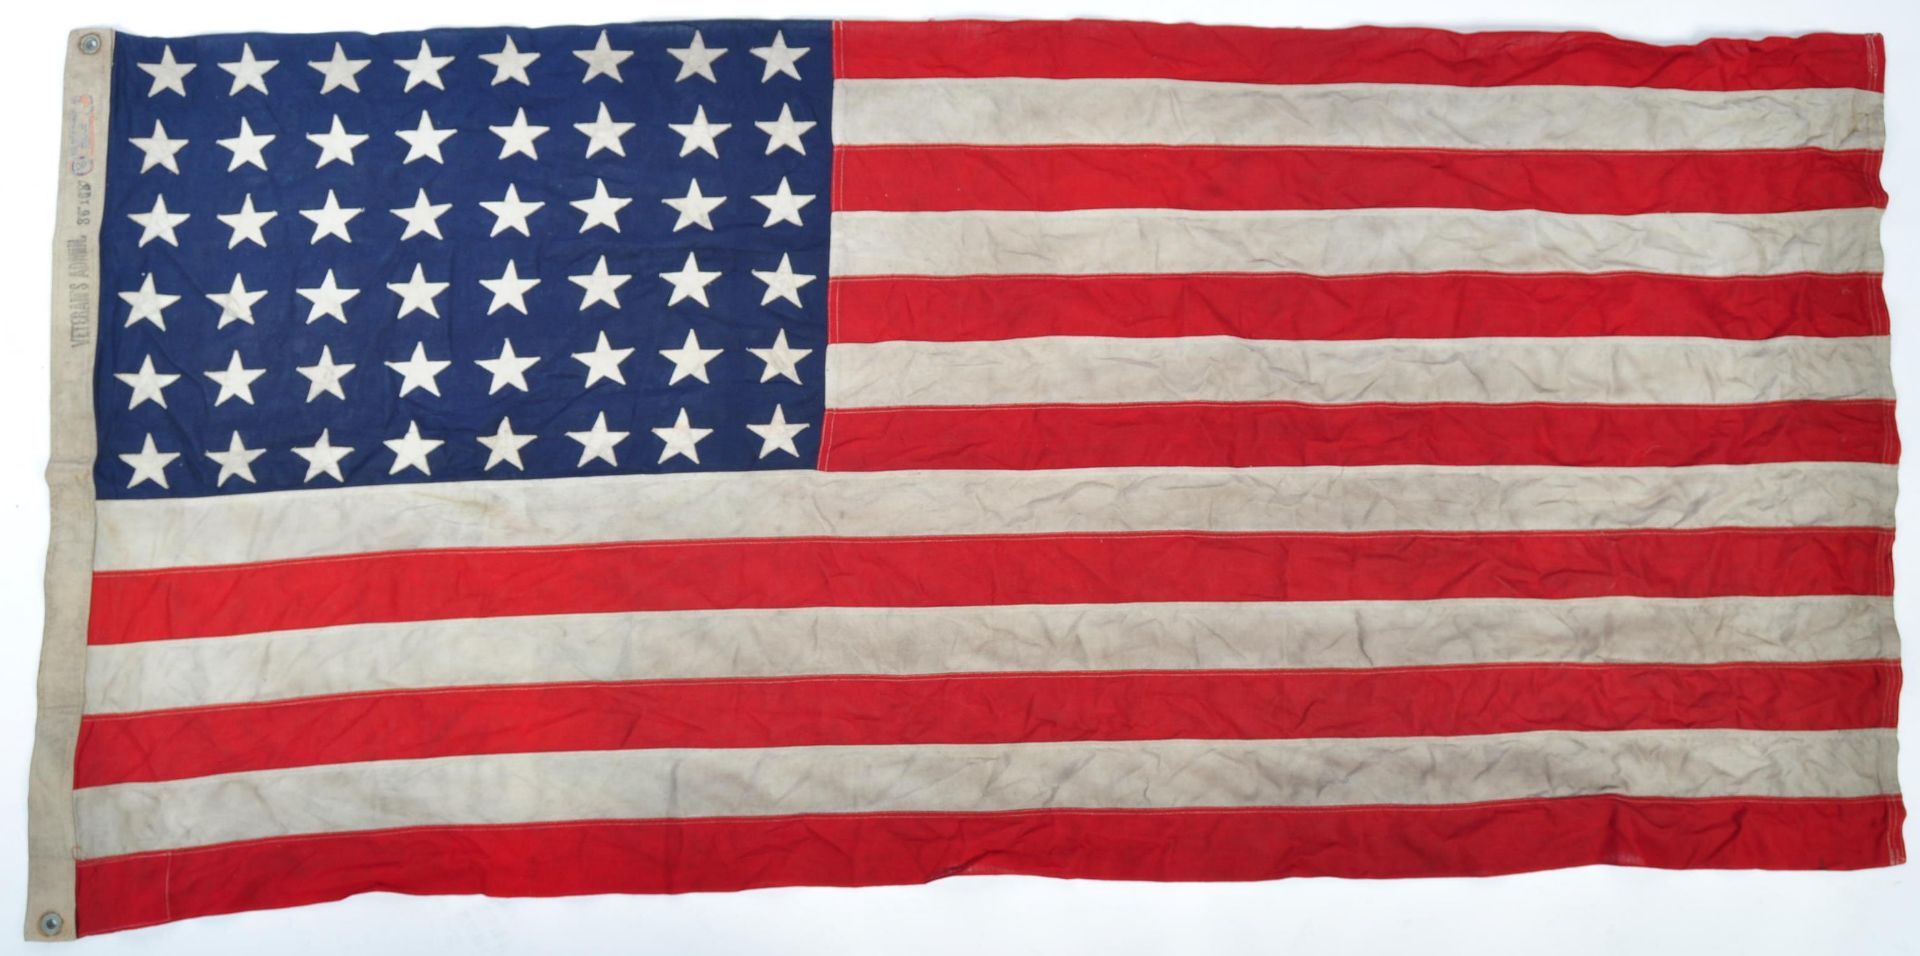 ORIGINAL LARGE WWII 1944 AMERICAN STANDARD VETERAN'S ADMIN FLAG